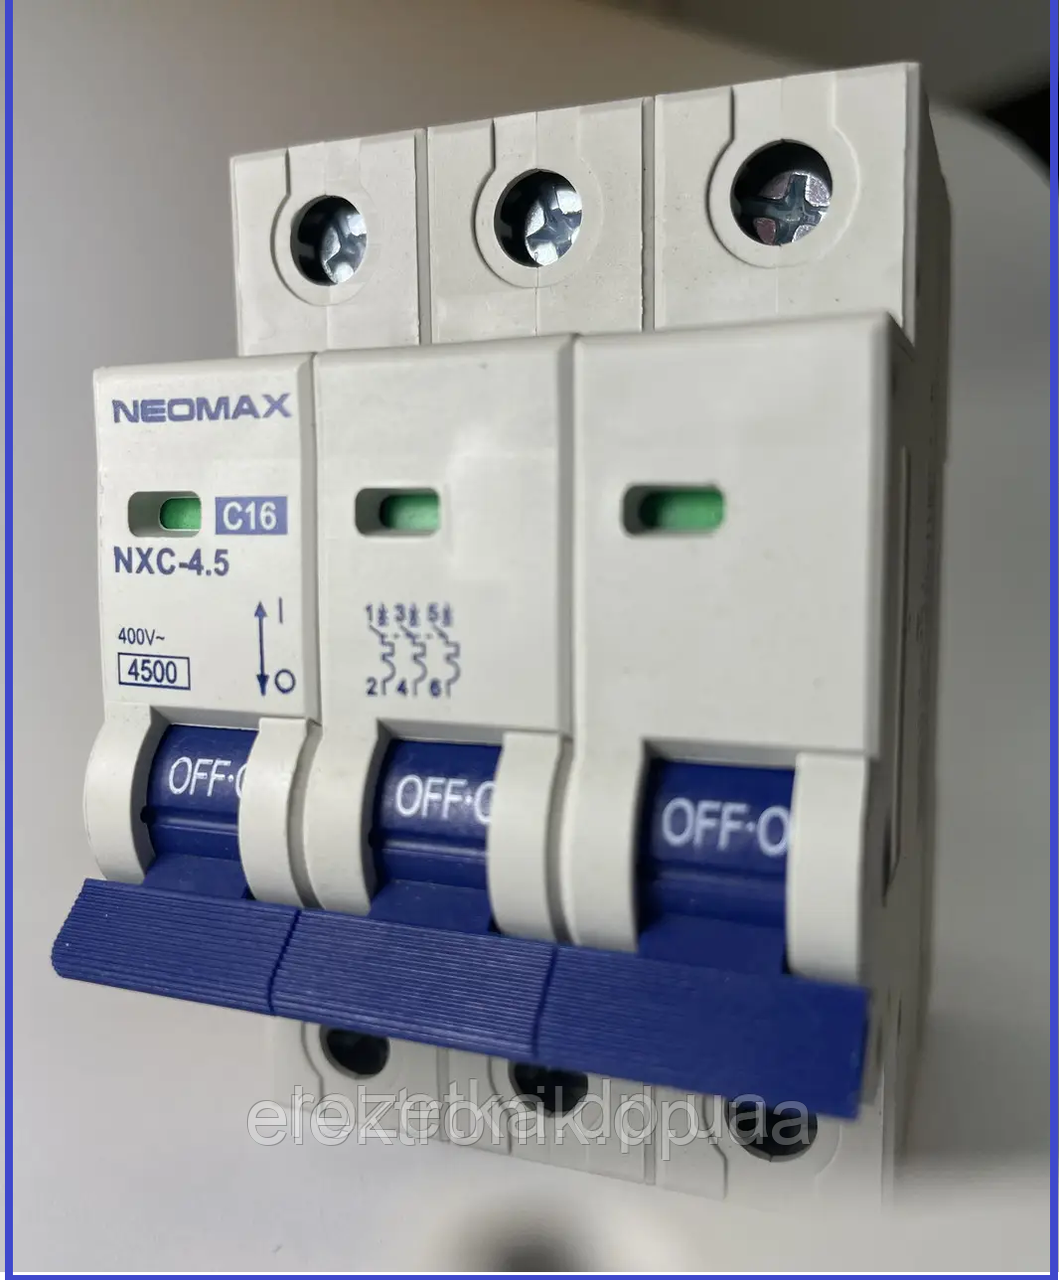 Автоматический выключатель NEOMAX 3P 16A, фото 1